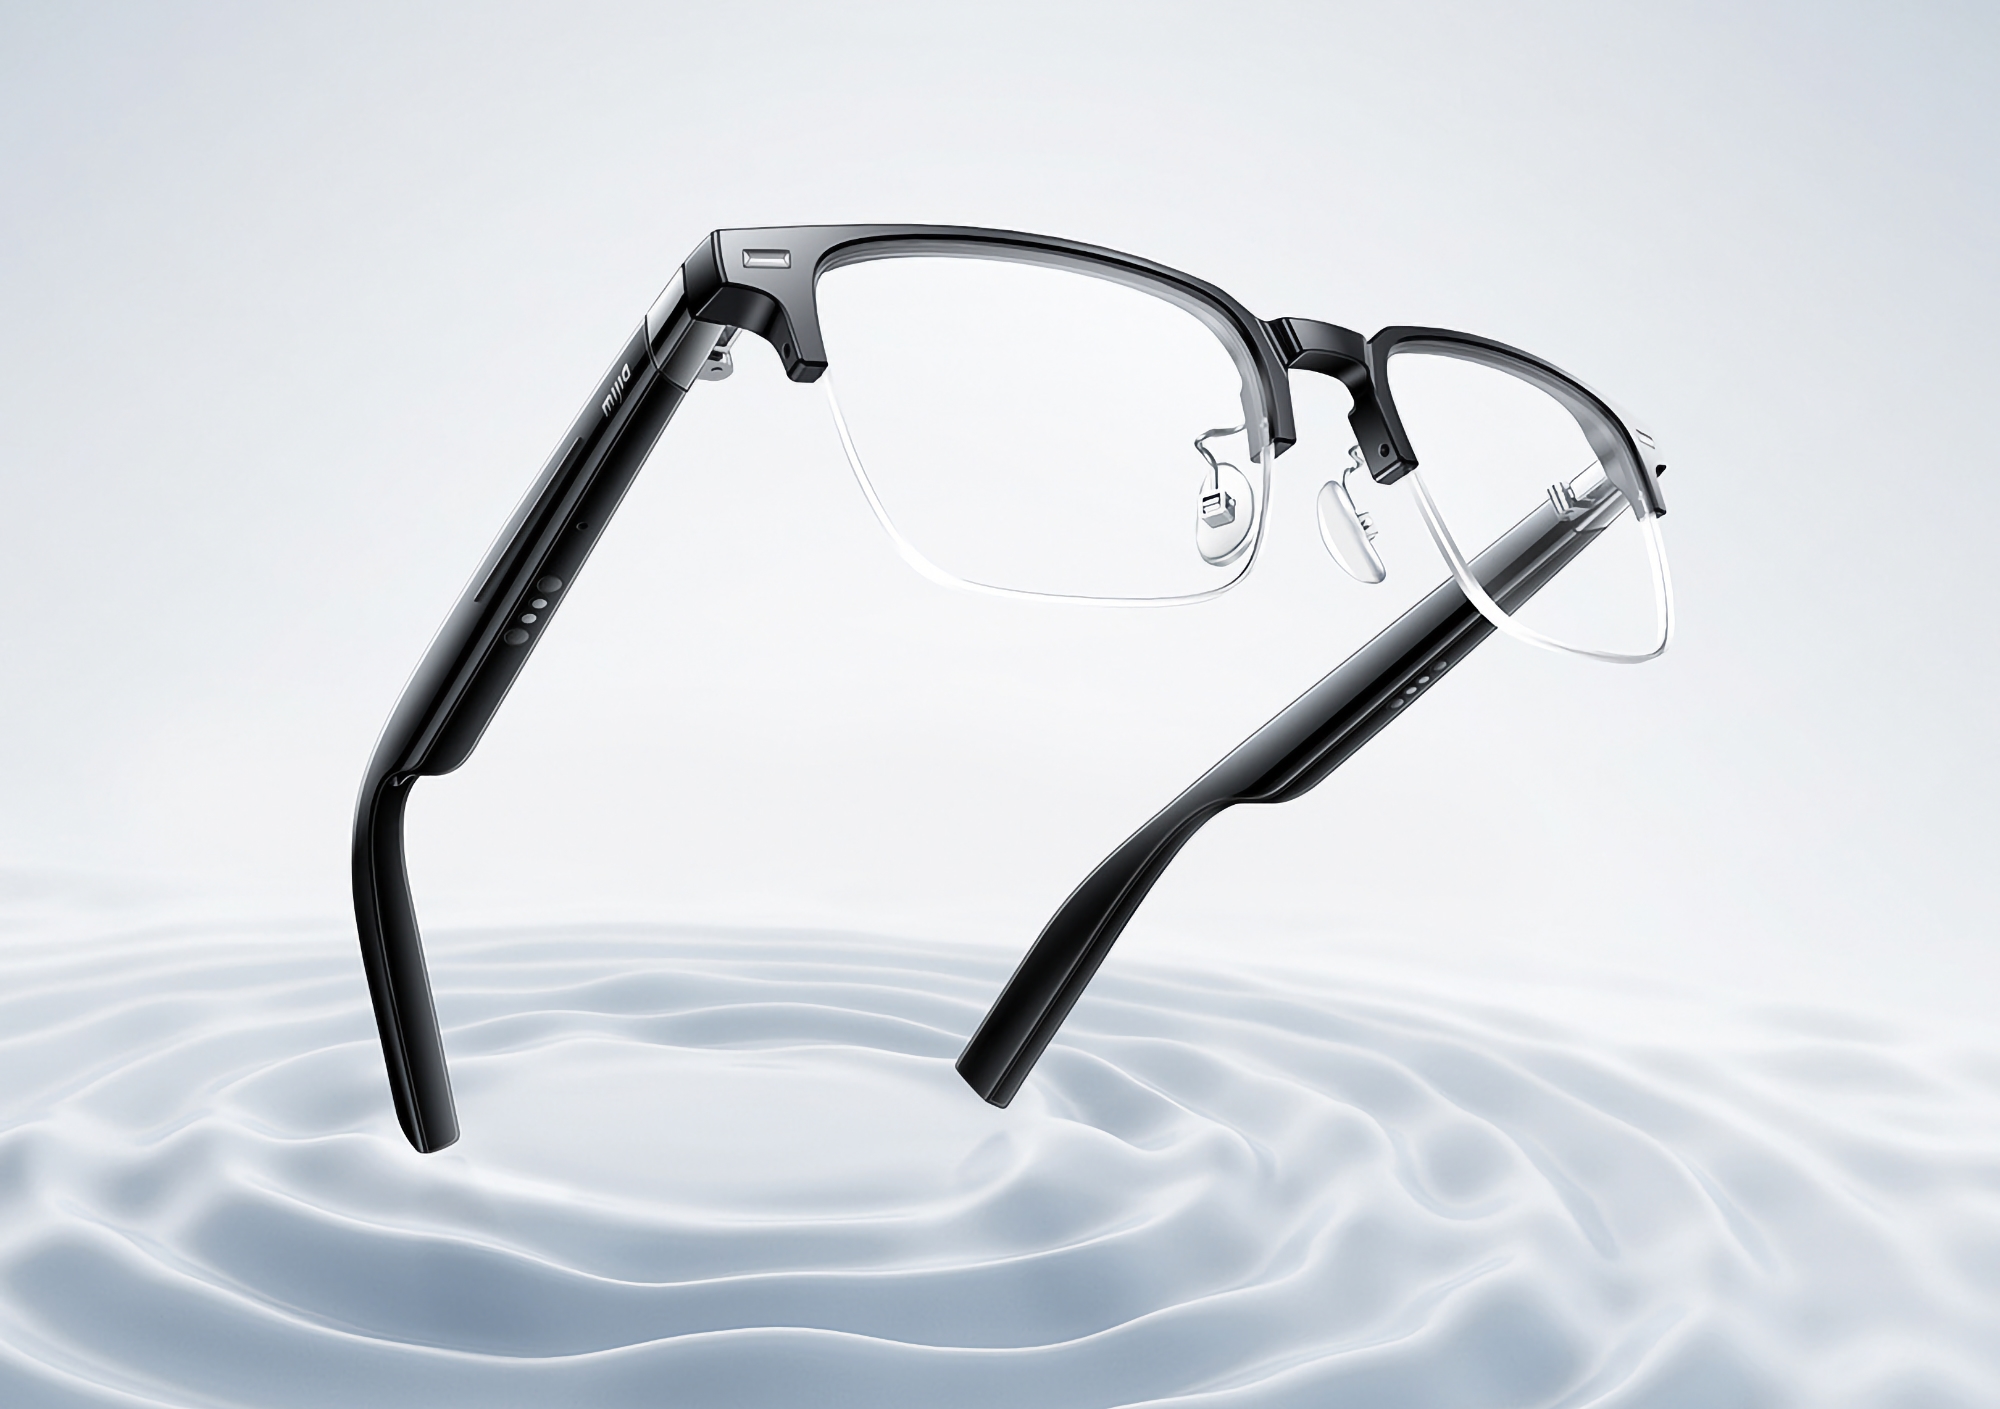 Xiaomi ha presentato gli occhiali audio intelligenti MiJia con un'autonomia fino a 24 ore e un prezzo di 83 dollari.